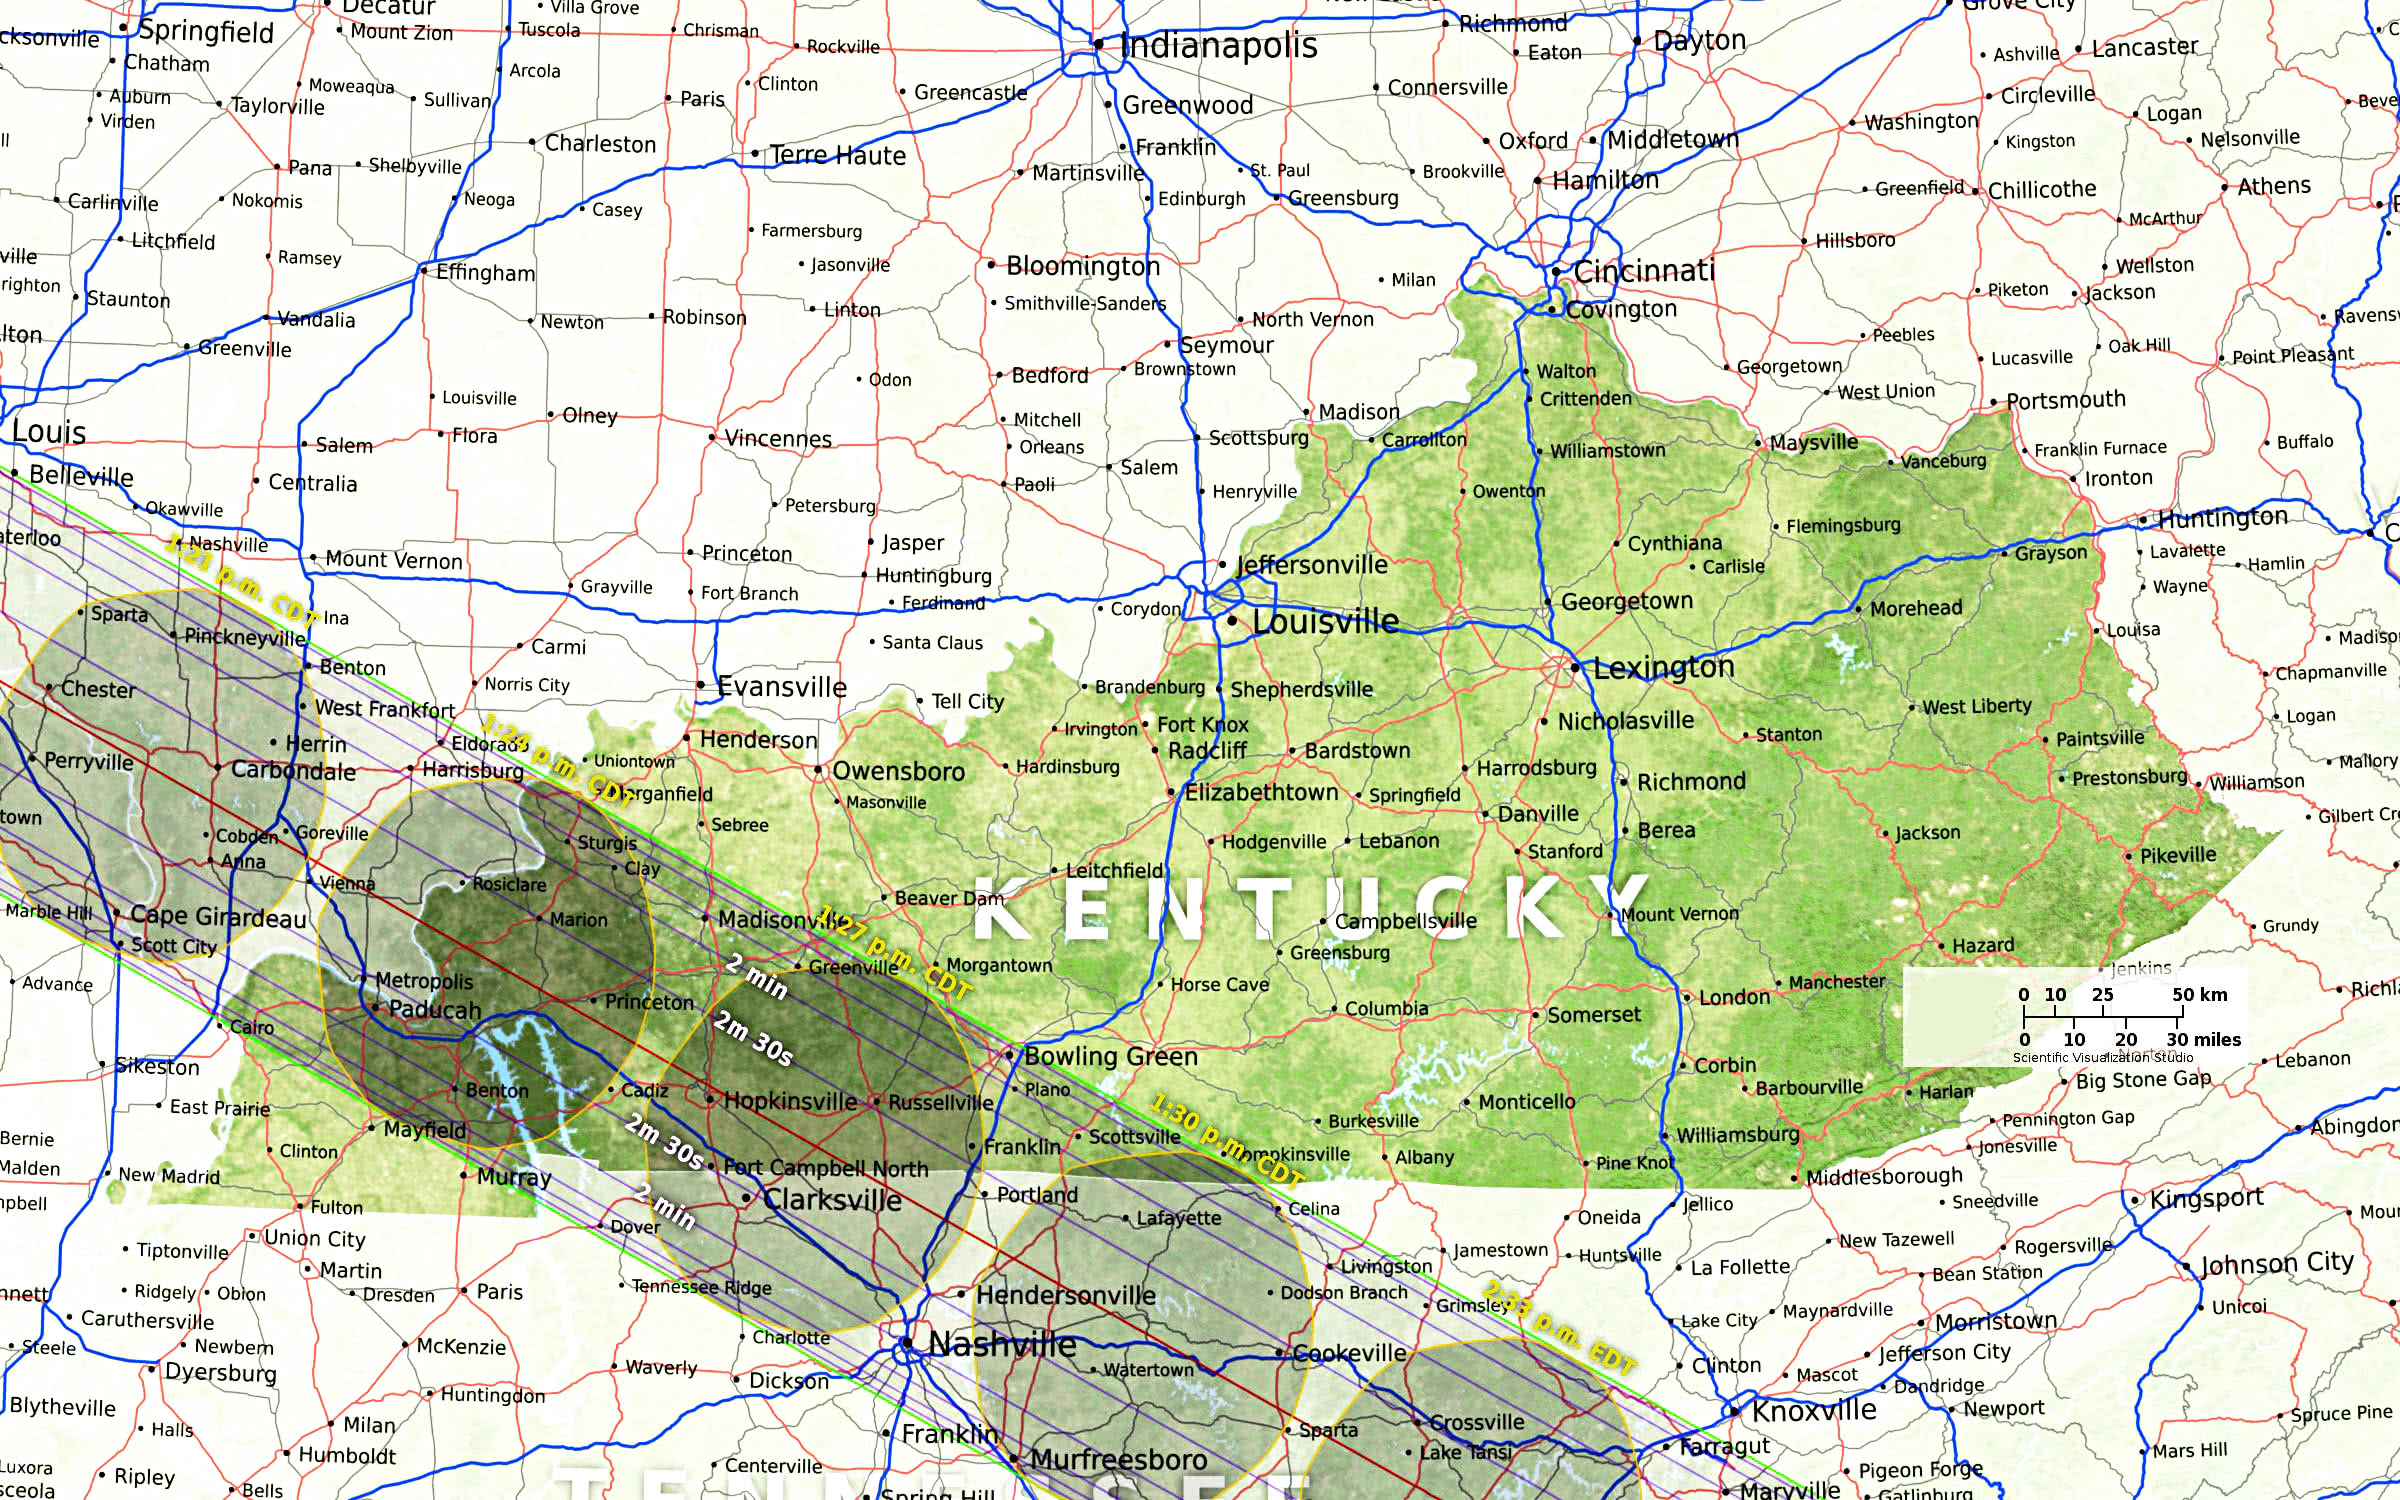 Kentucky eclipse path